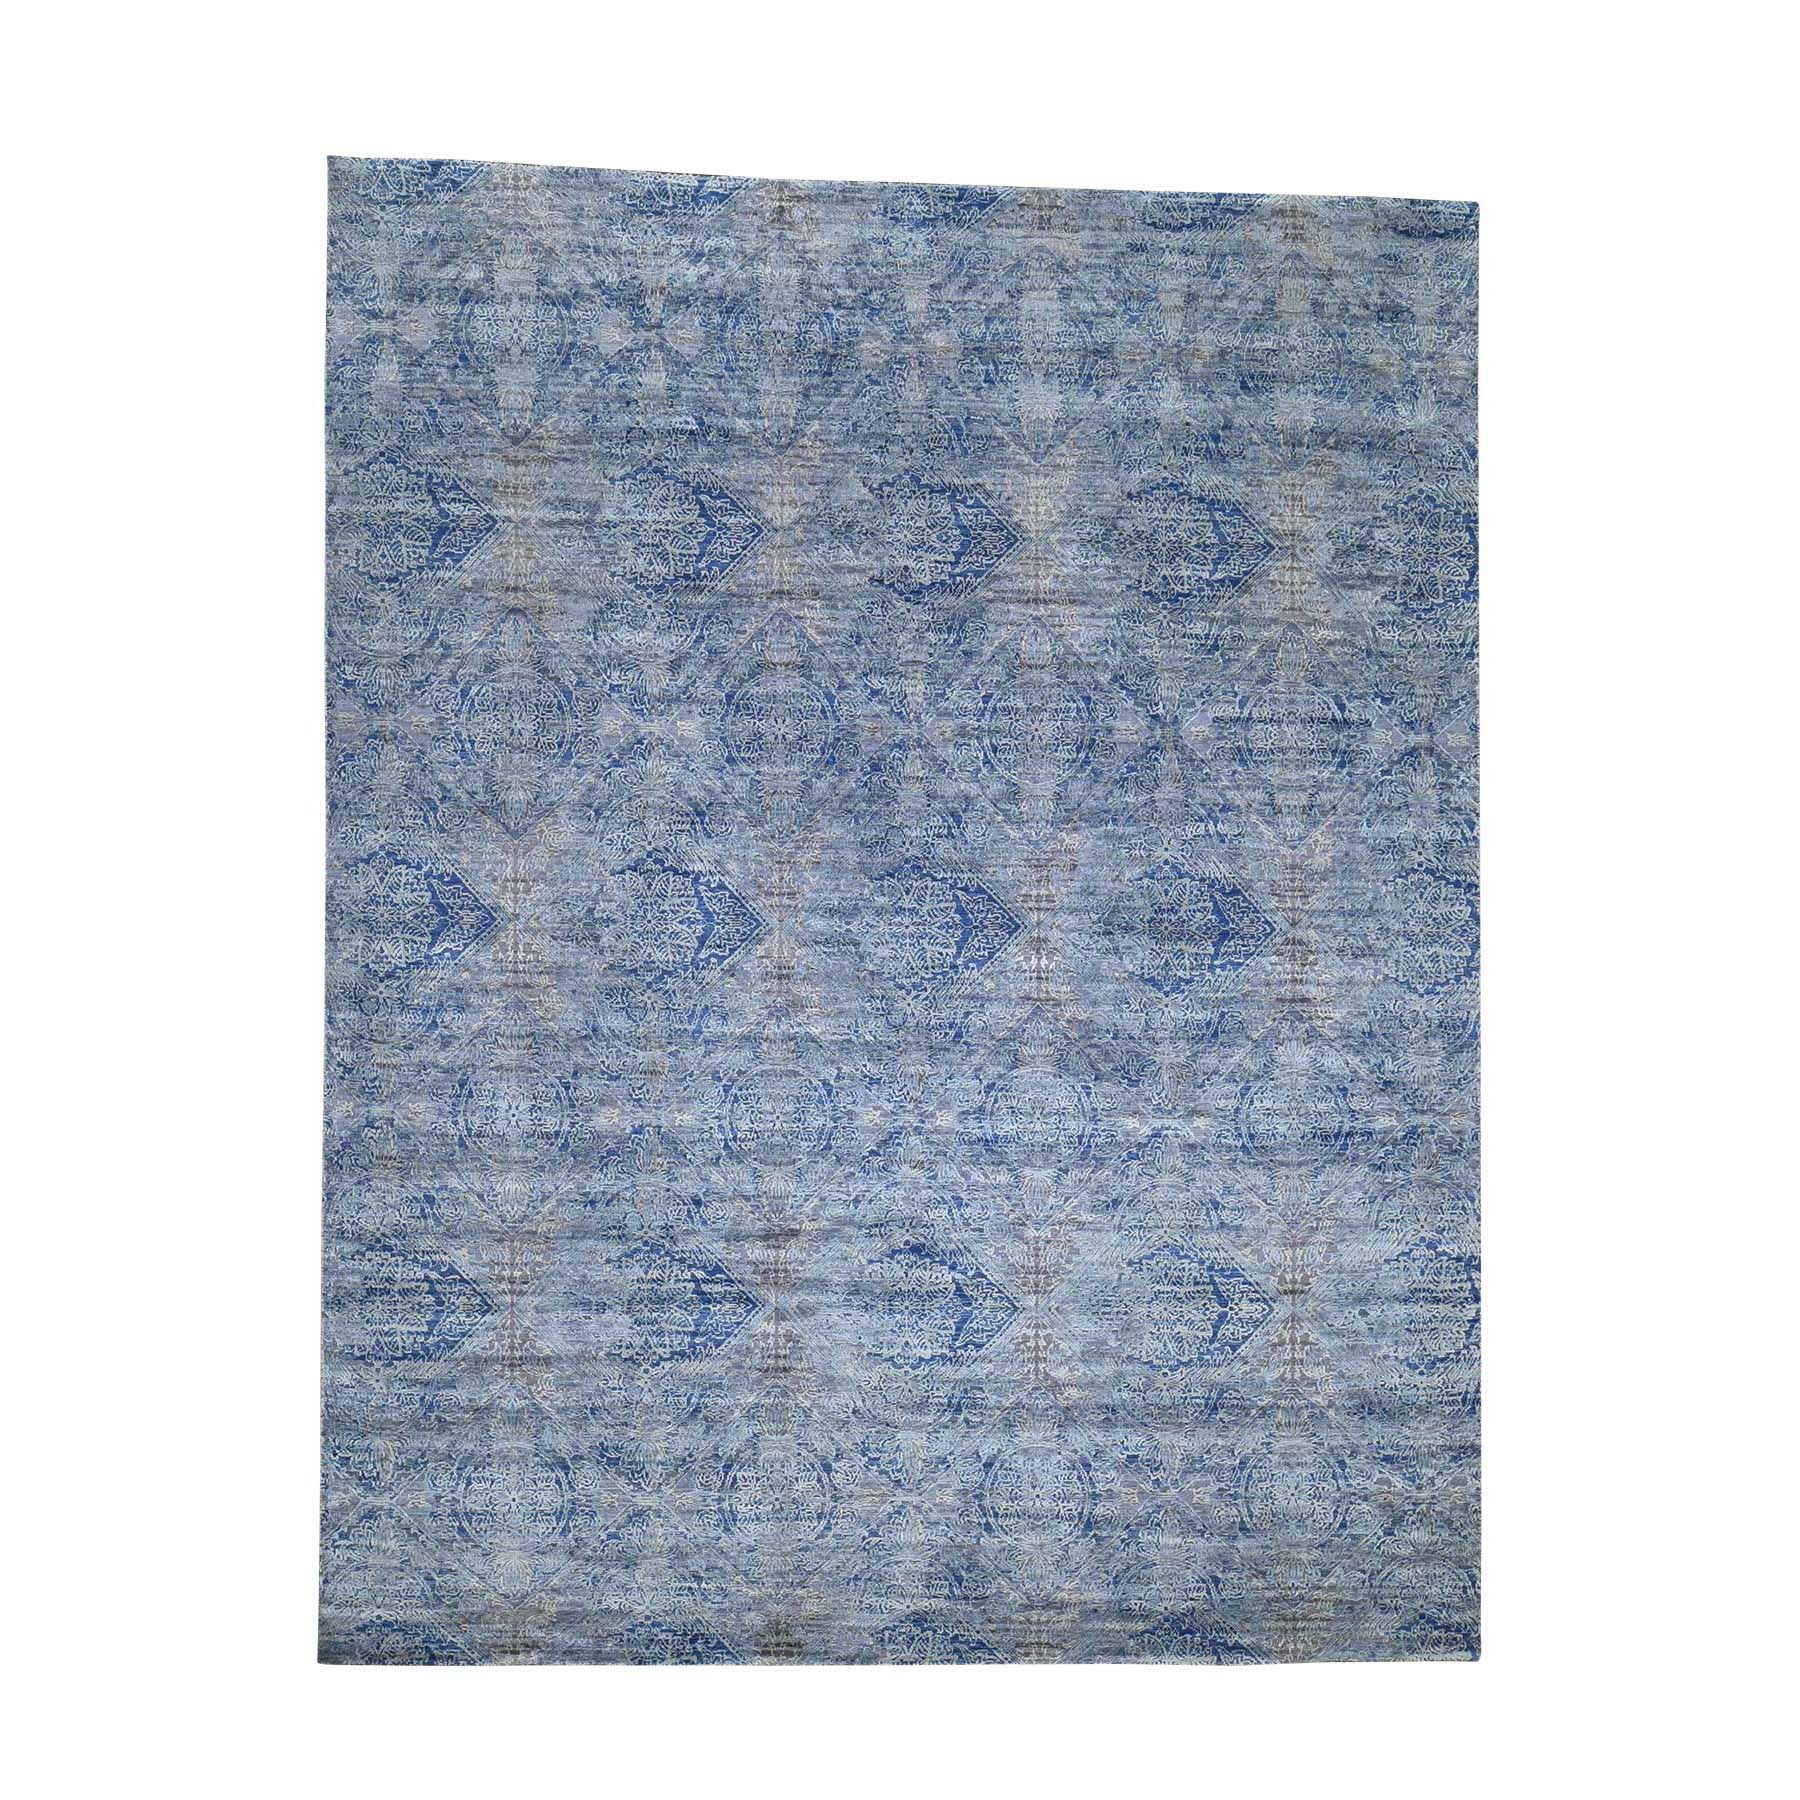 8'x10'2" ERASED ROSSETS,Silk With Textured Wool Denim BluE Hand Woven Oriental Rug 